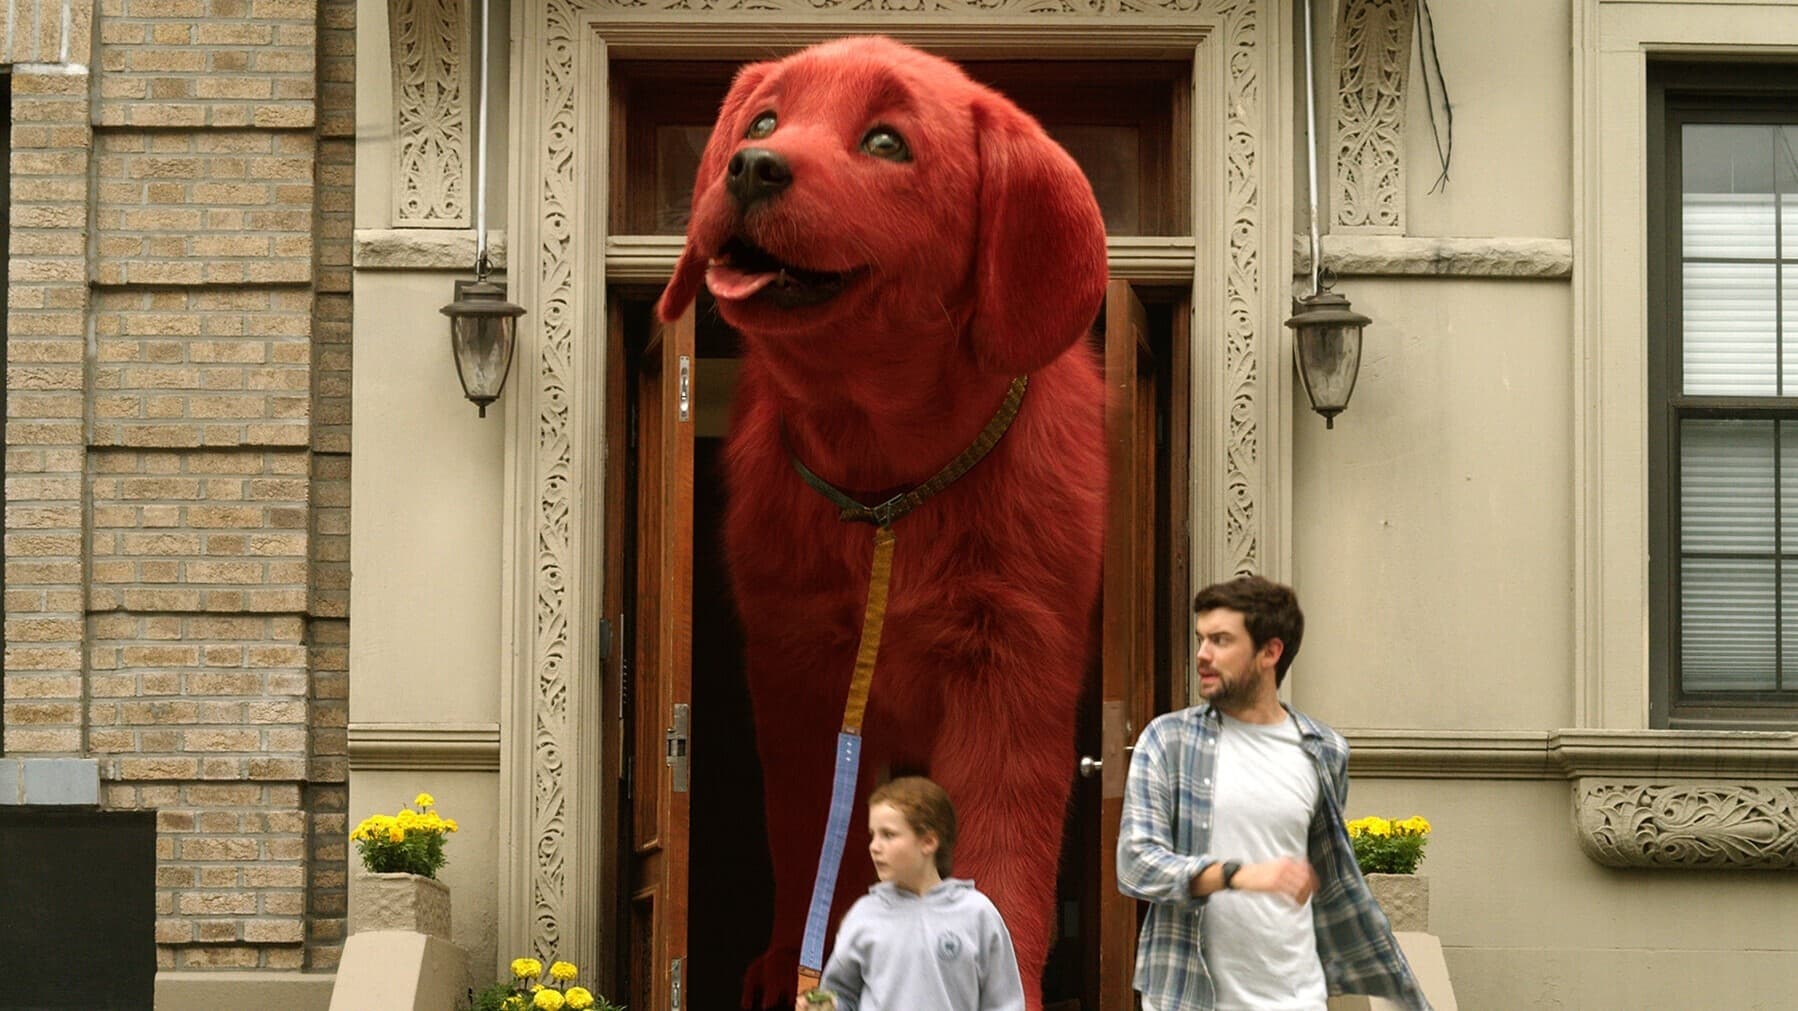 Clifford. Wielki czerwony pies (2021)